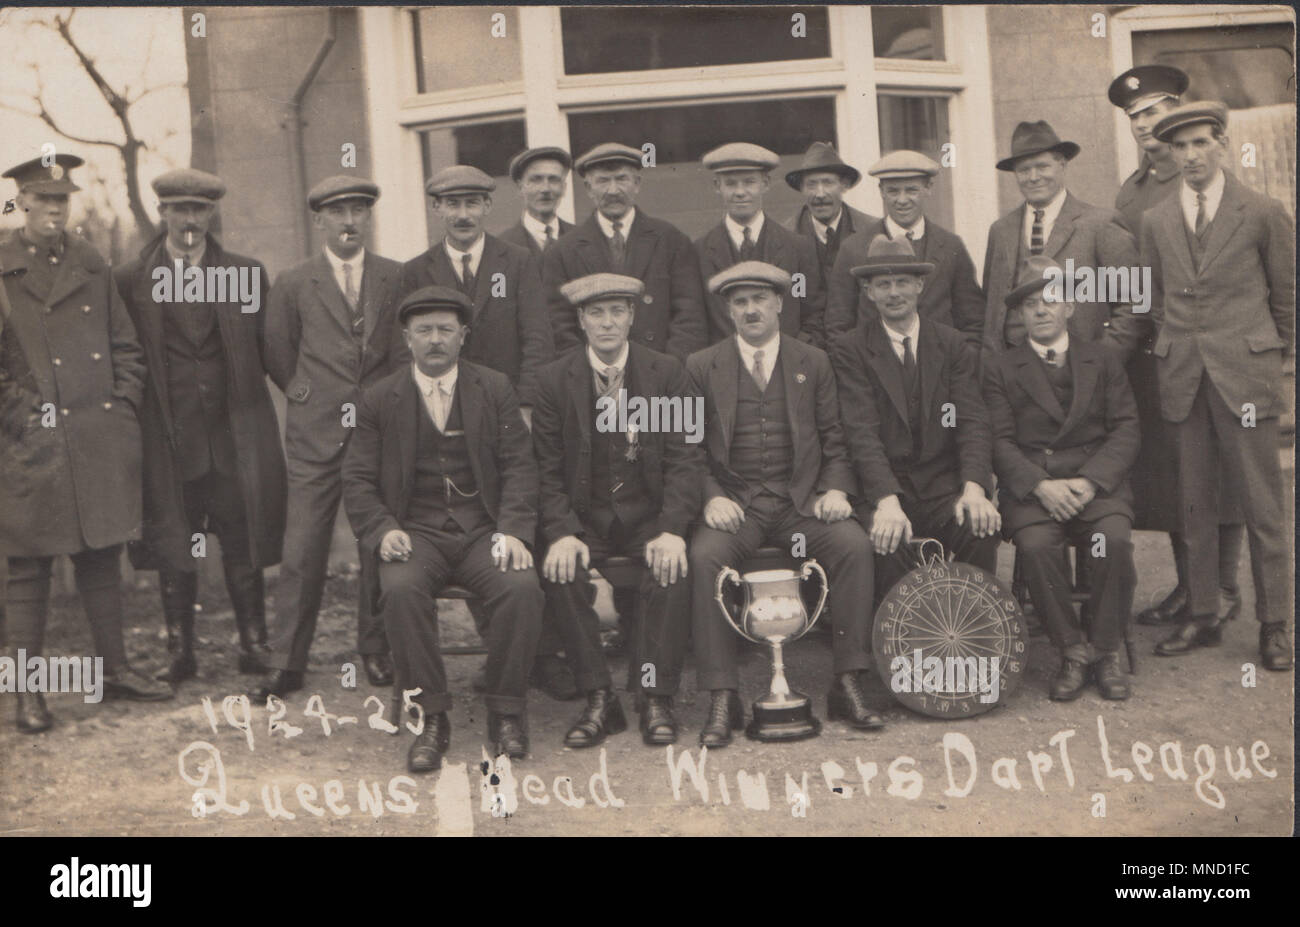 Vintage Foto des 1924-1925 Queens Head Public House Dart Team. Gewinner der Dart Liga. Stockfoto